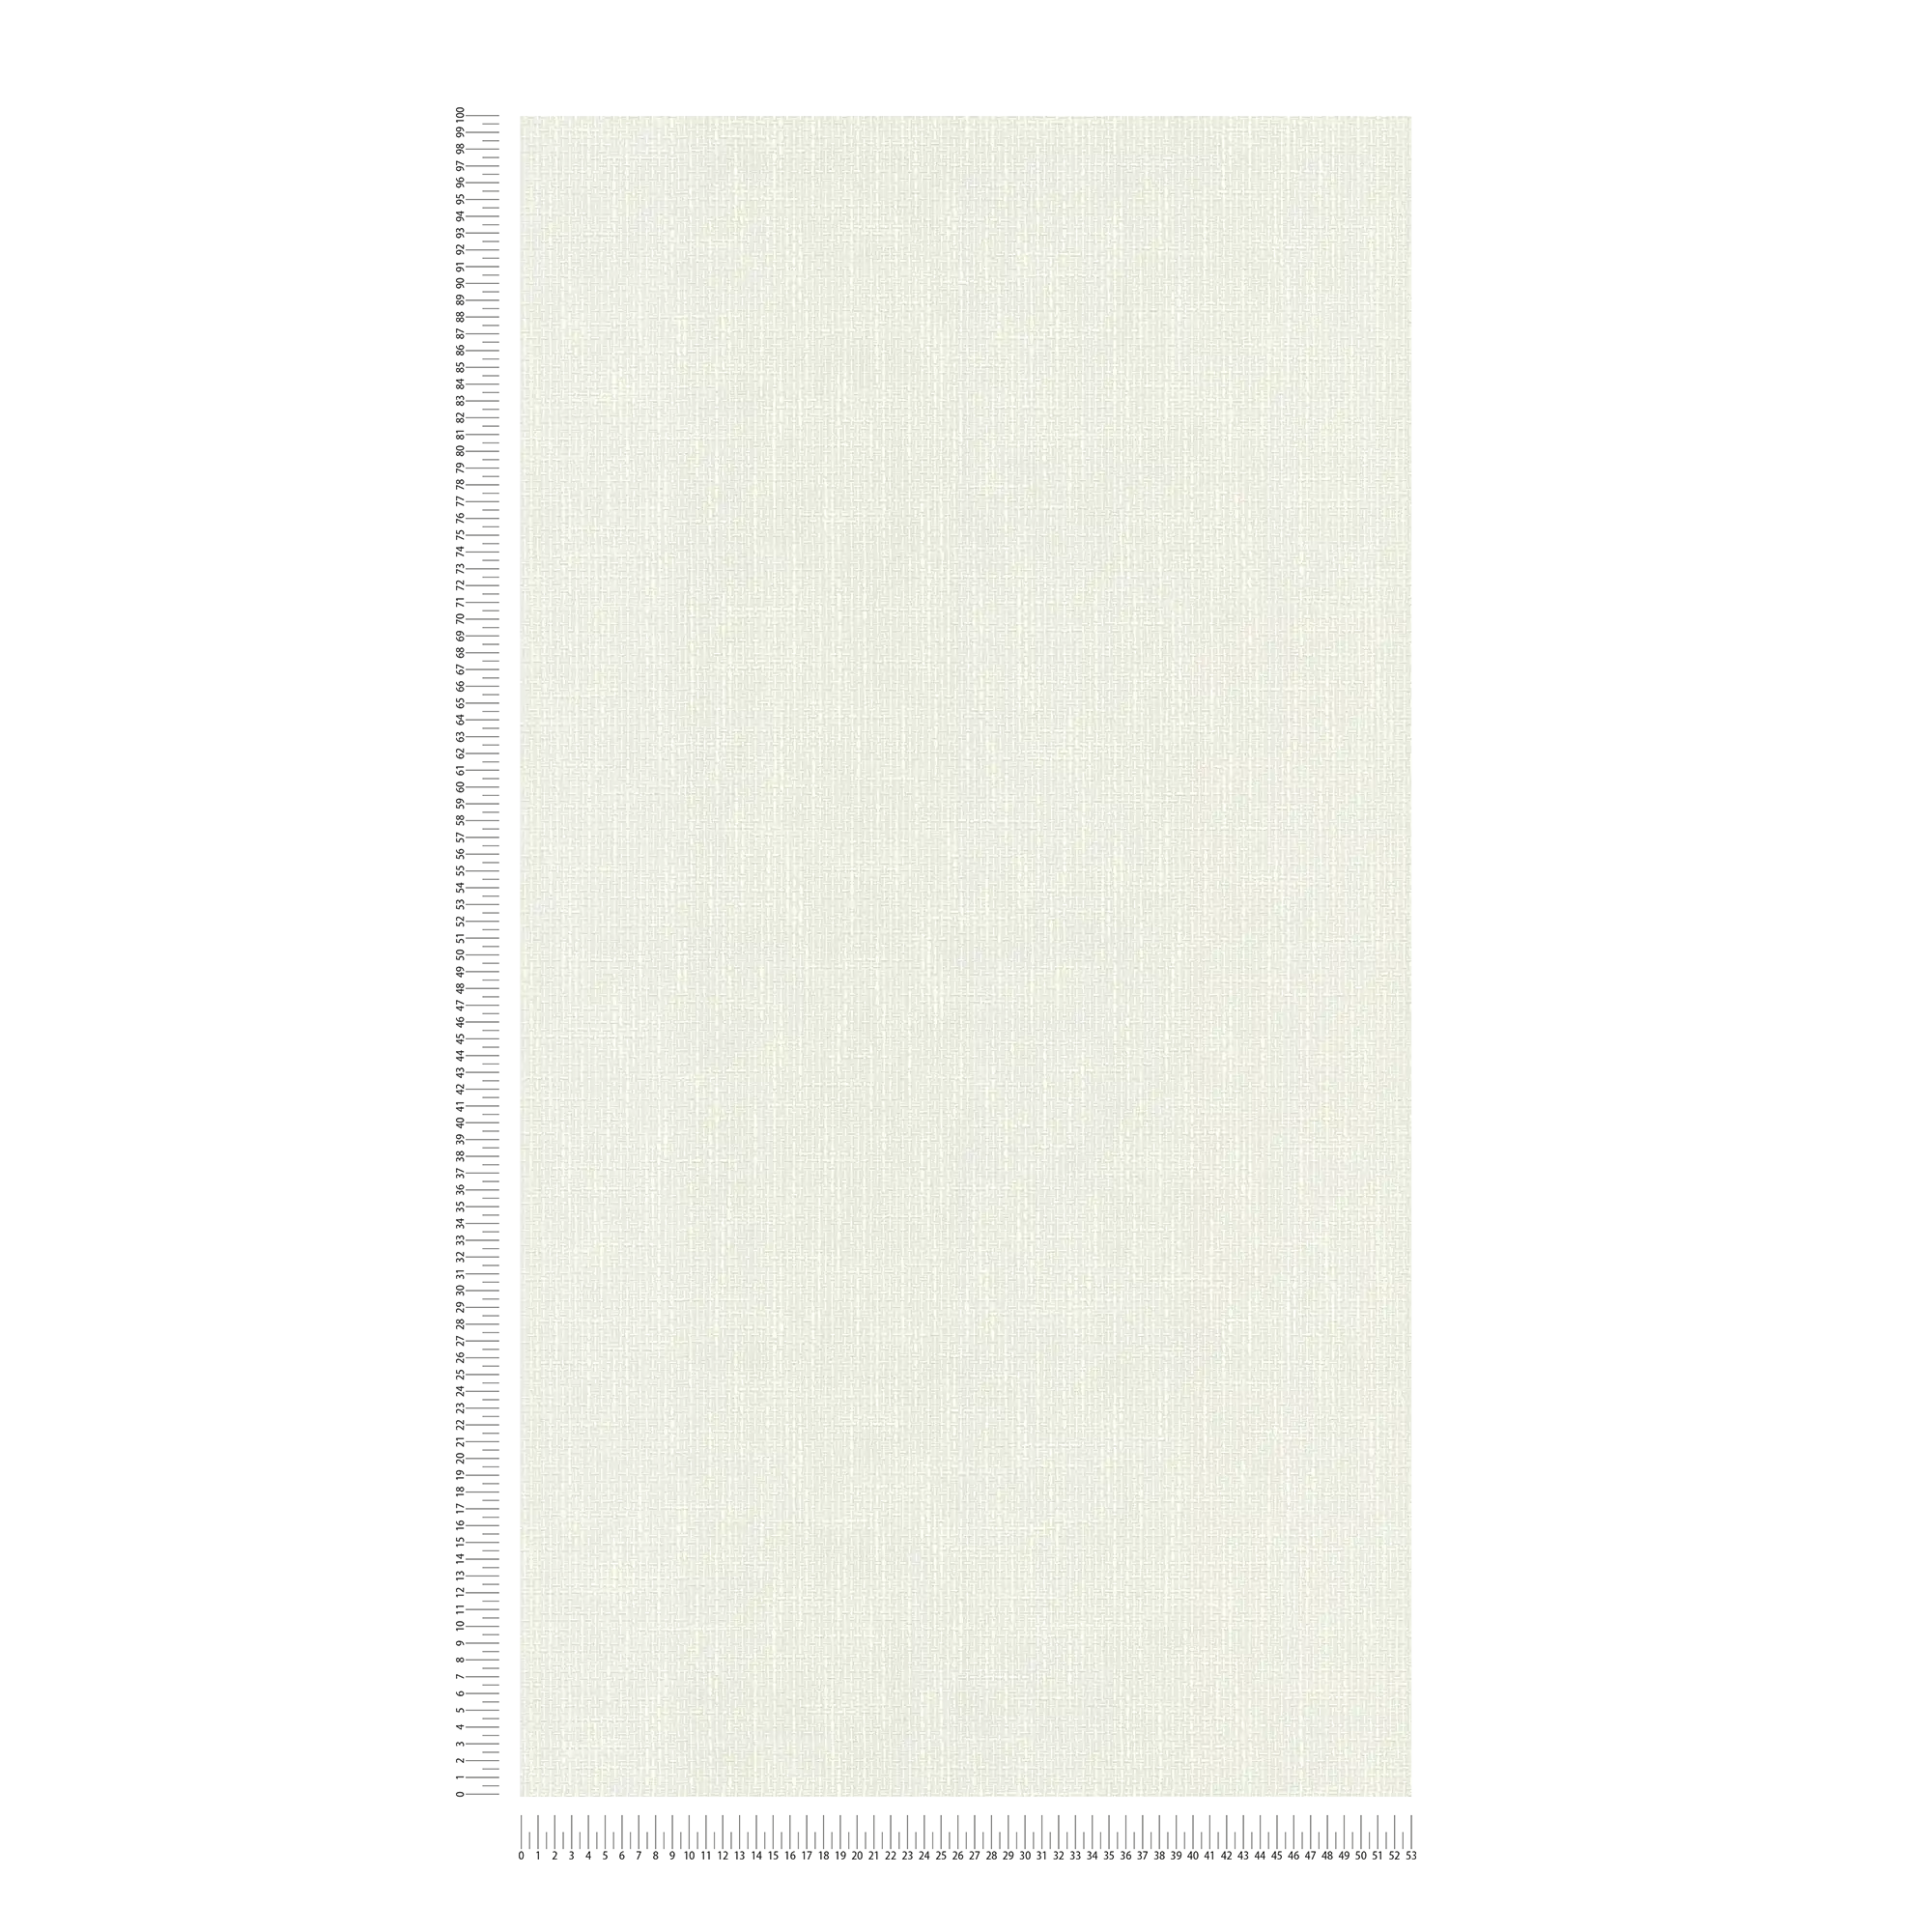             Geprofileerd behangpapier met weefselstructuur in linnenlook - wit
        